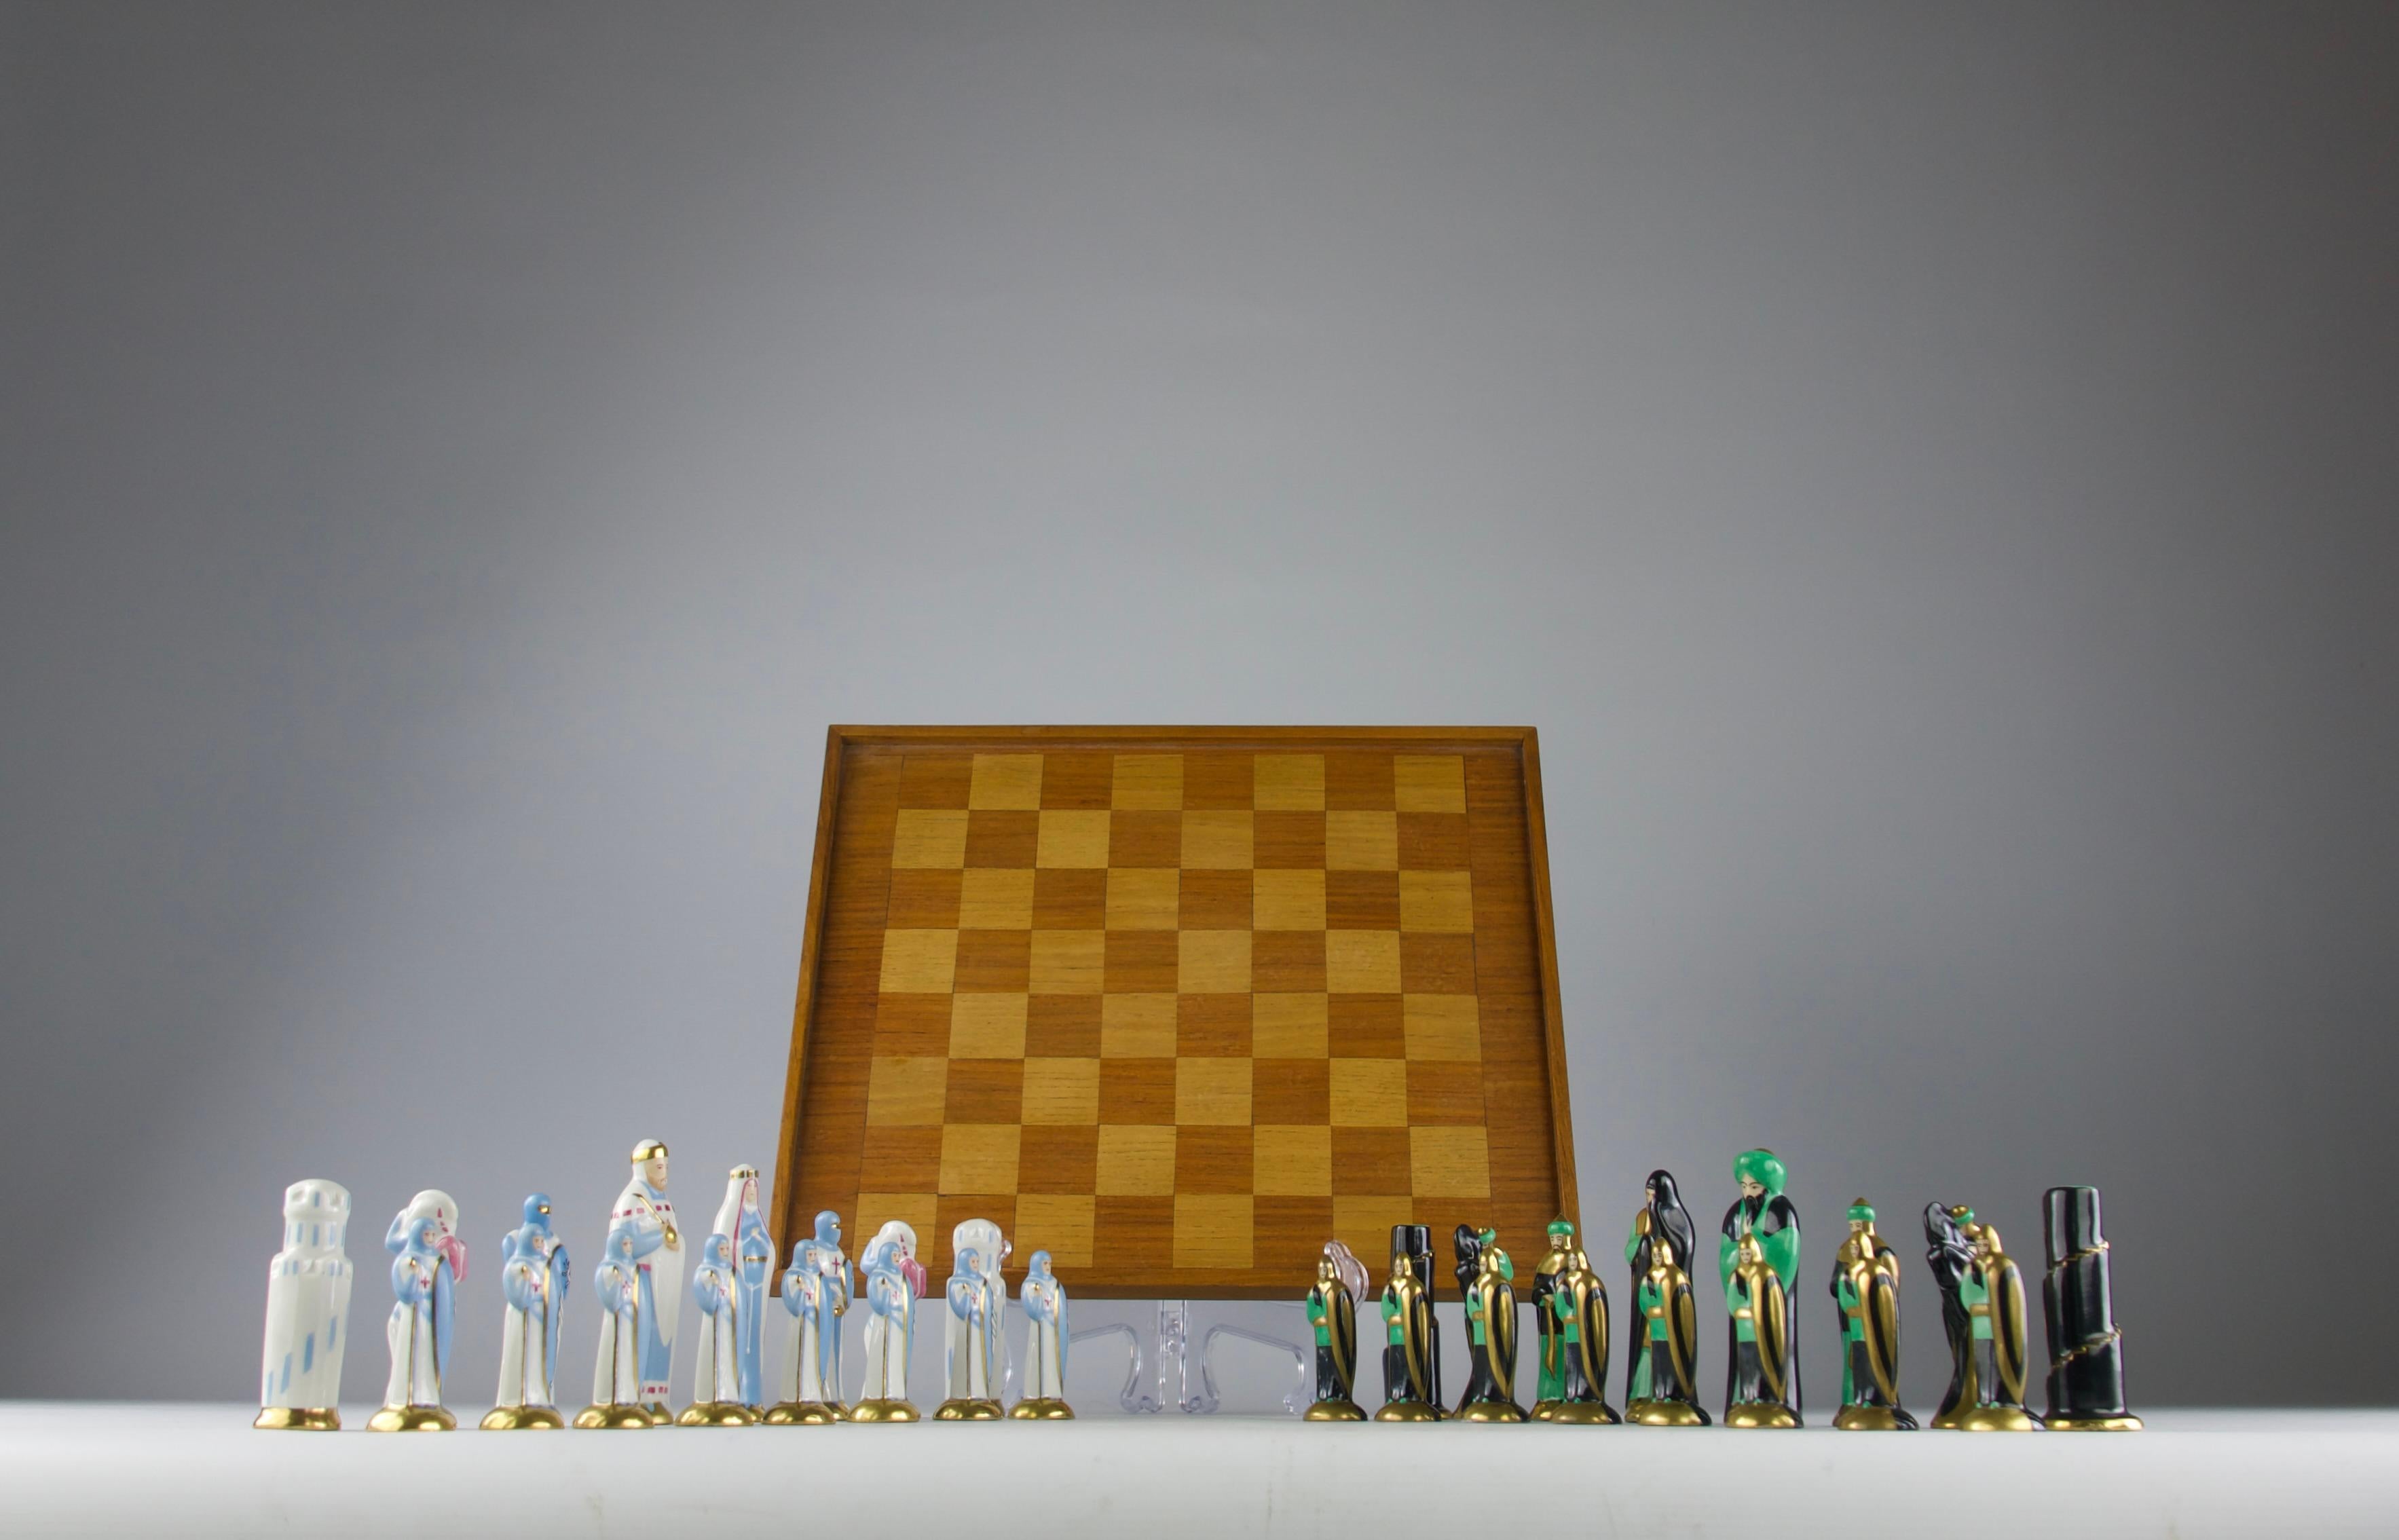 Superbe et extrêmement rare jeu d'échecs ROBJ Templar et Saracen de la période Art Déco française circa 1930. 

Les détails des pièces sont magnifiques et comiques. Echiquier en bois exotique d'origine. 

En très bon état.

Dimensions en cm ( H x L